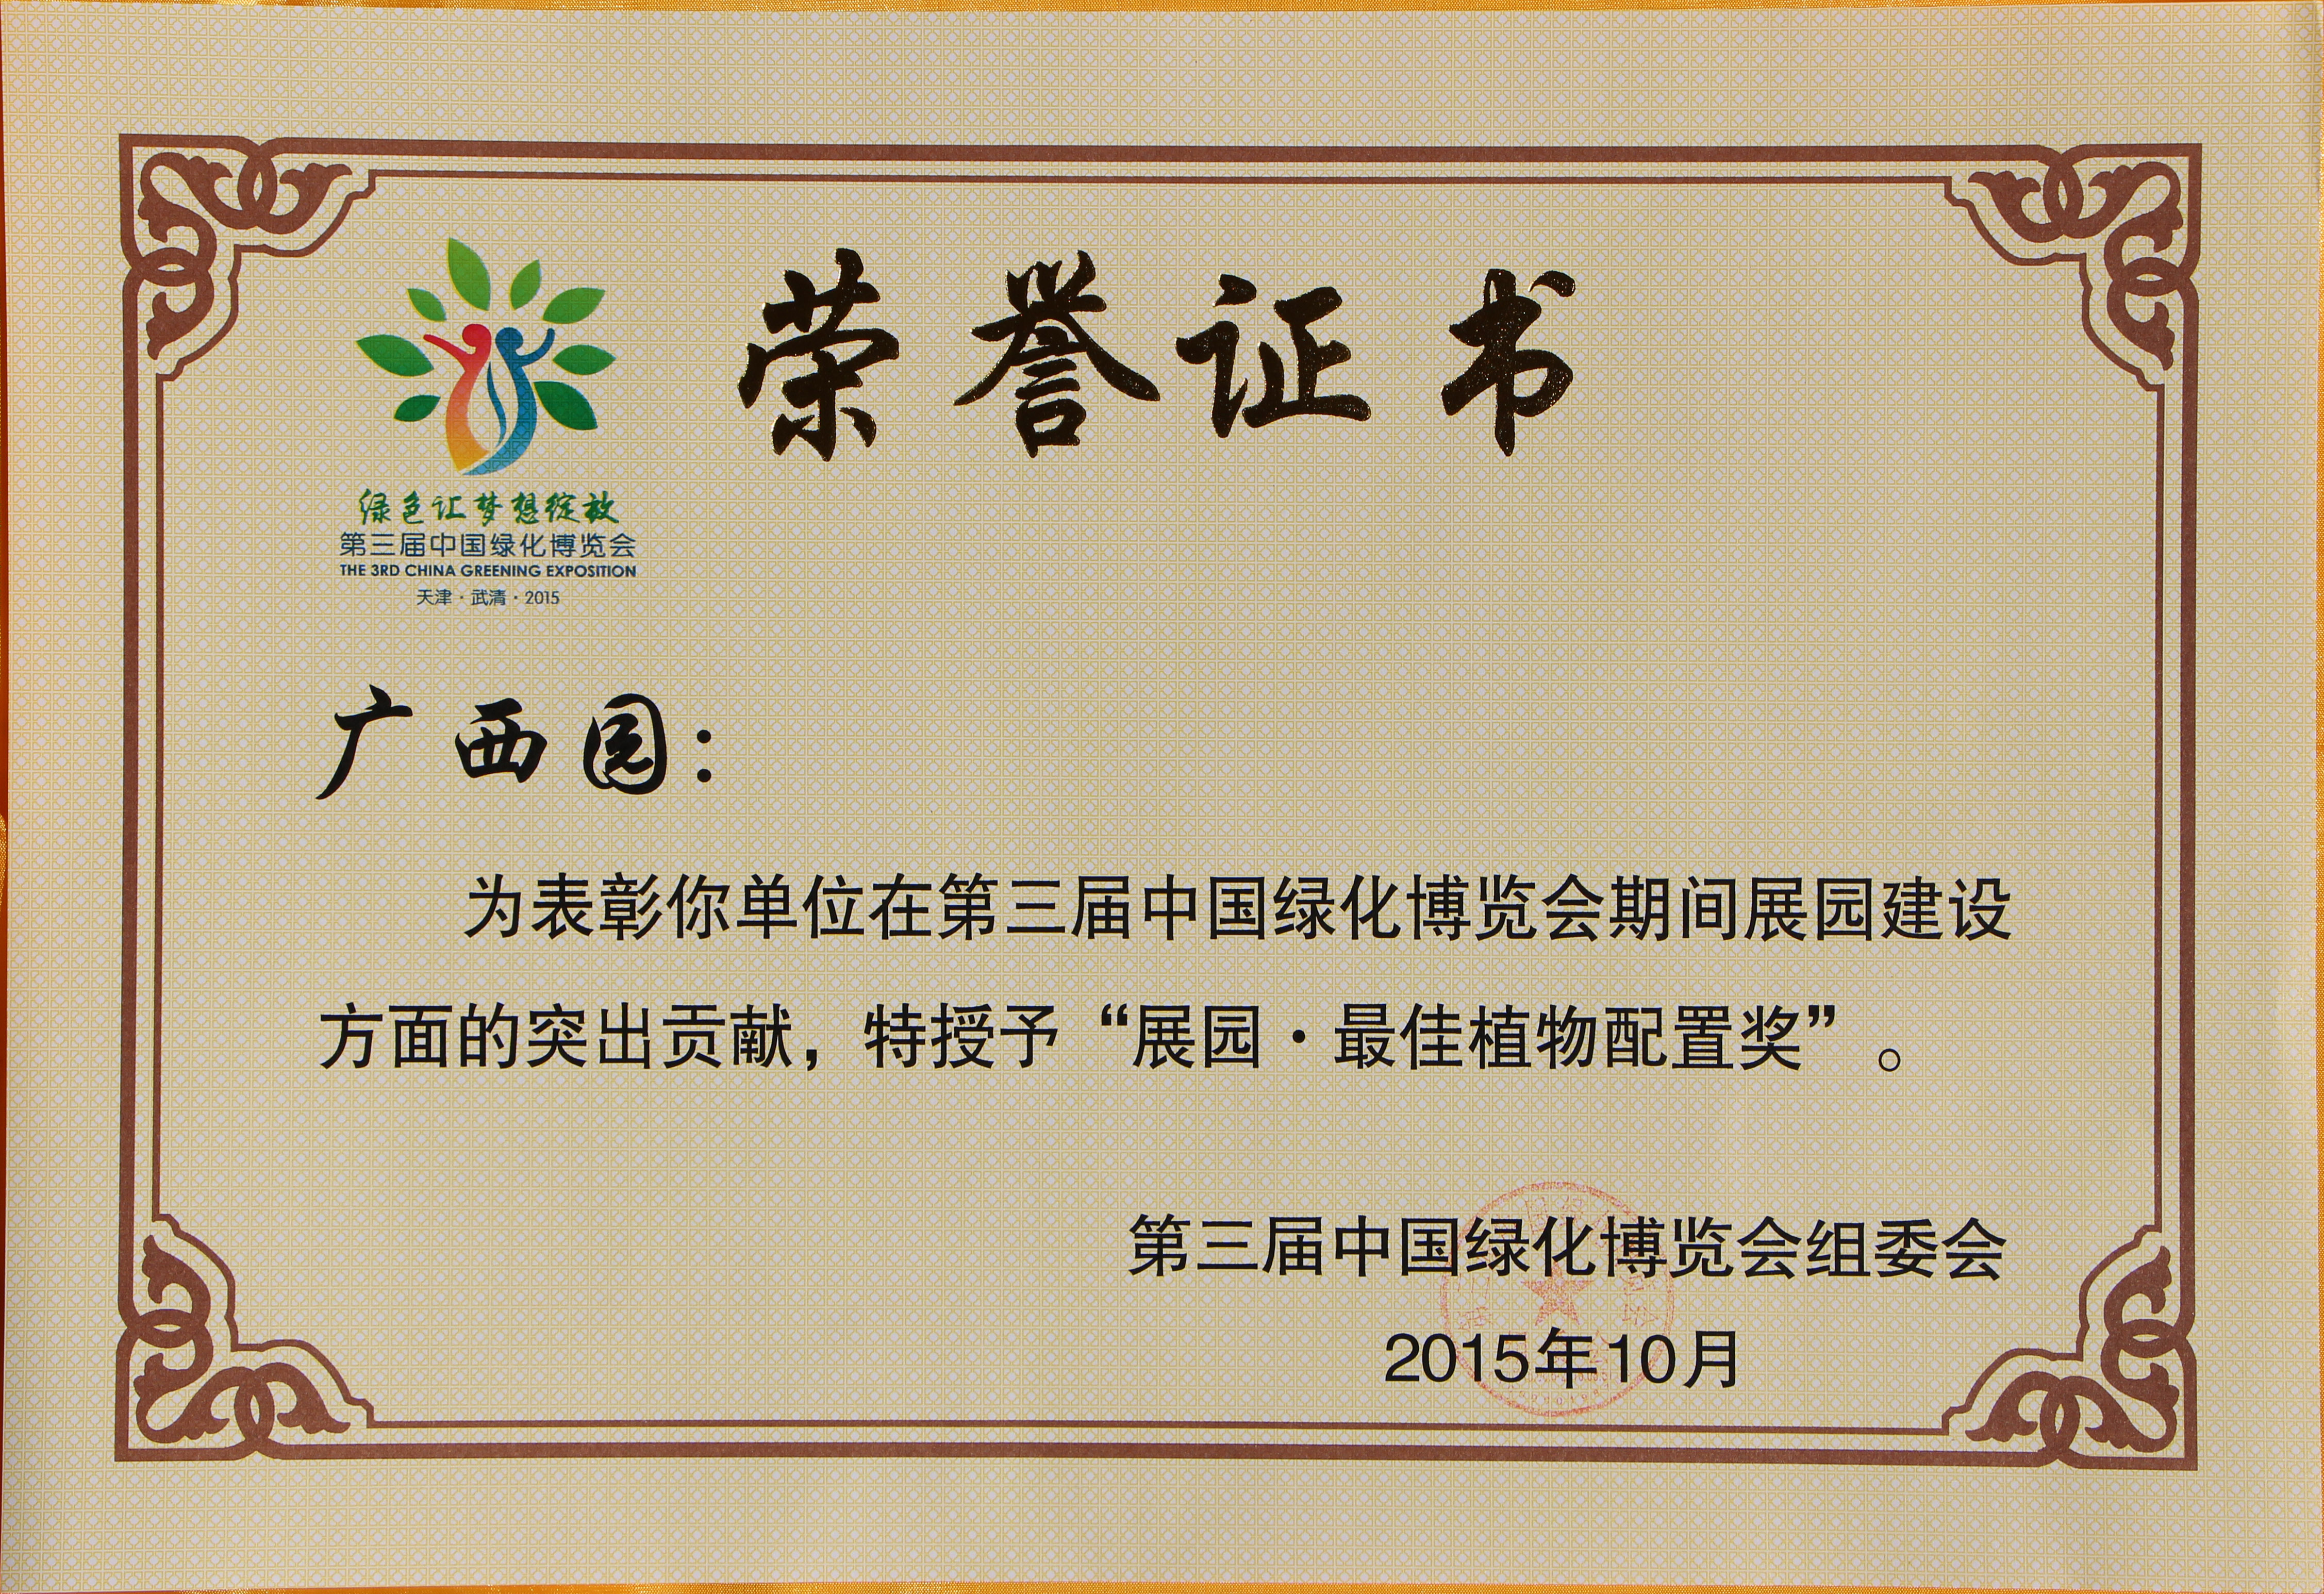 第三届中国绿化博览会 展园 最佳植物配置奖